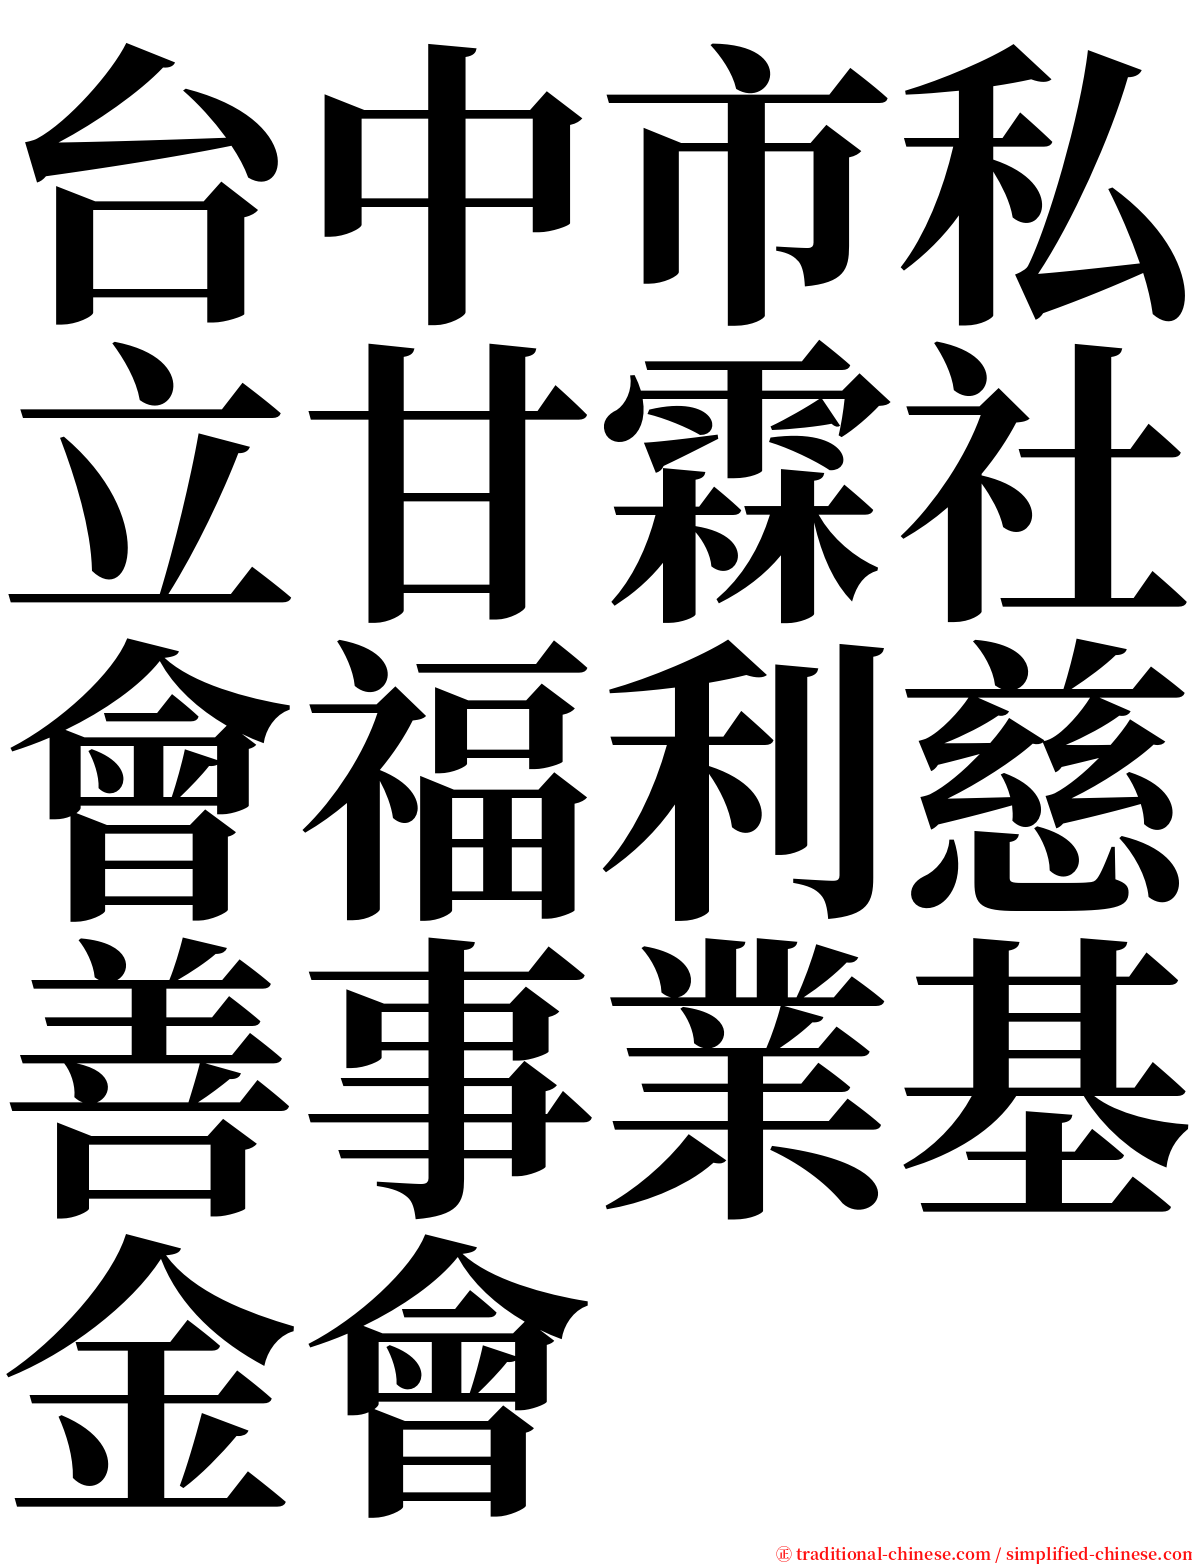 台中市私立甘霖社會福利慈善事業基金會 serif font